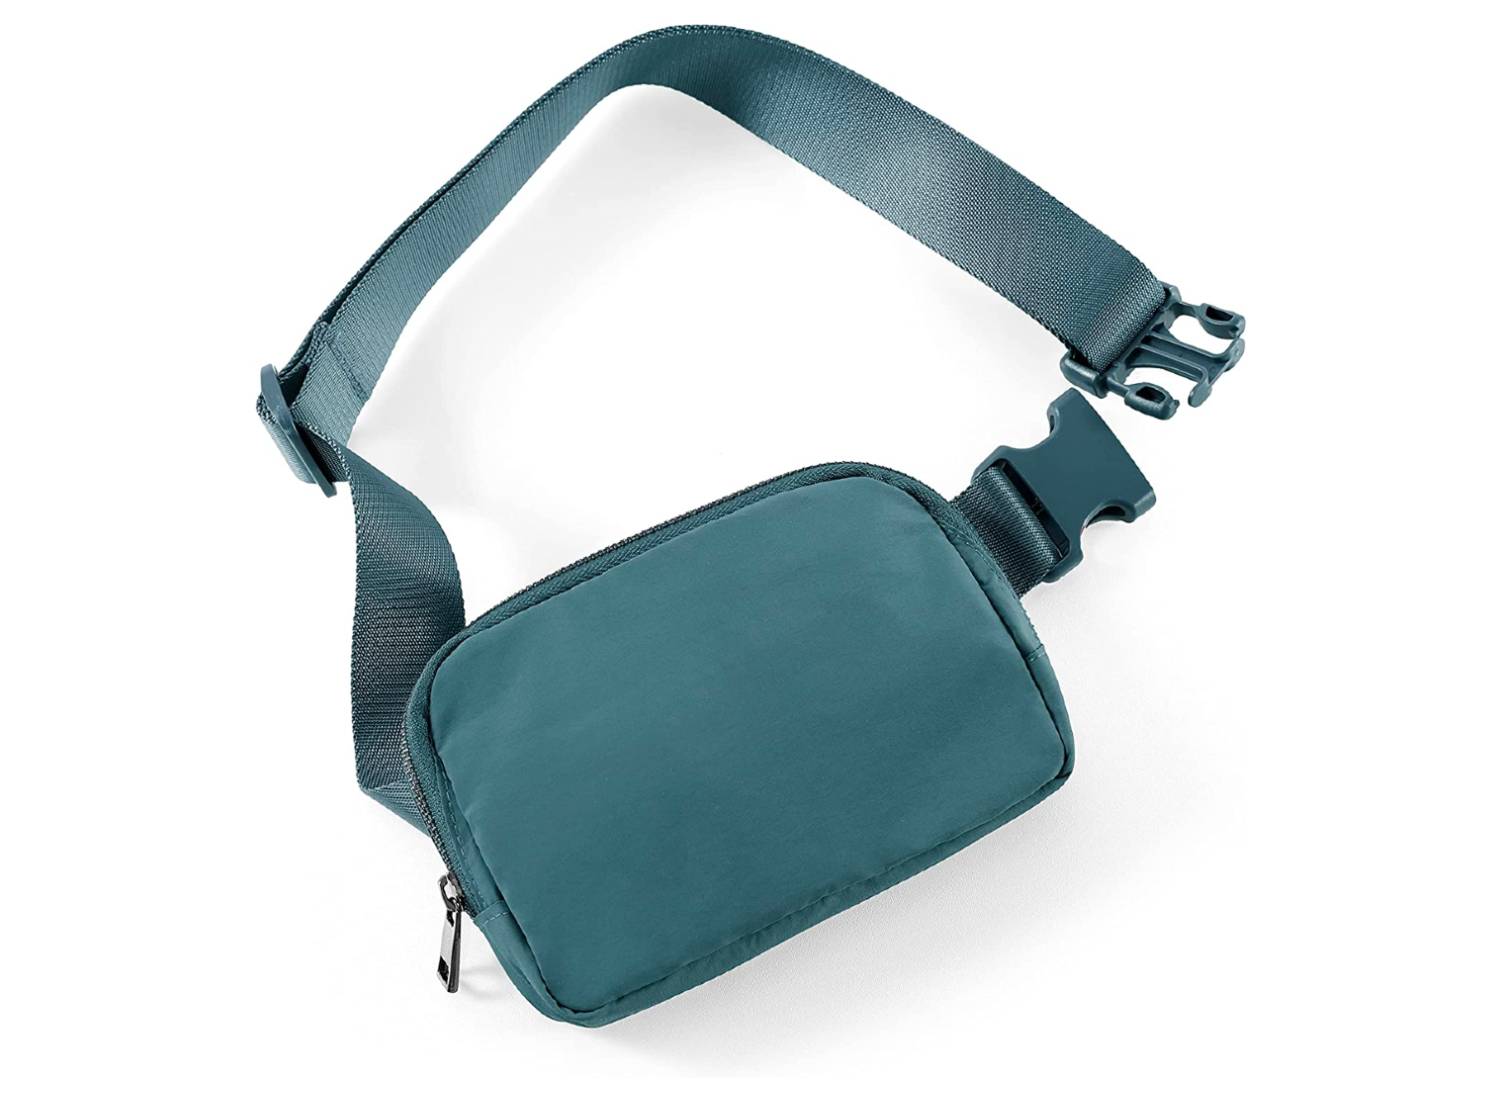 Tas tas fanny pack yang dapat disesuaikan dengan warna monokromatik